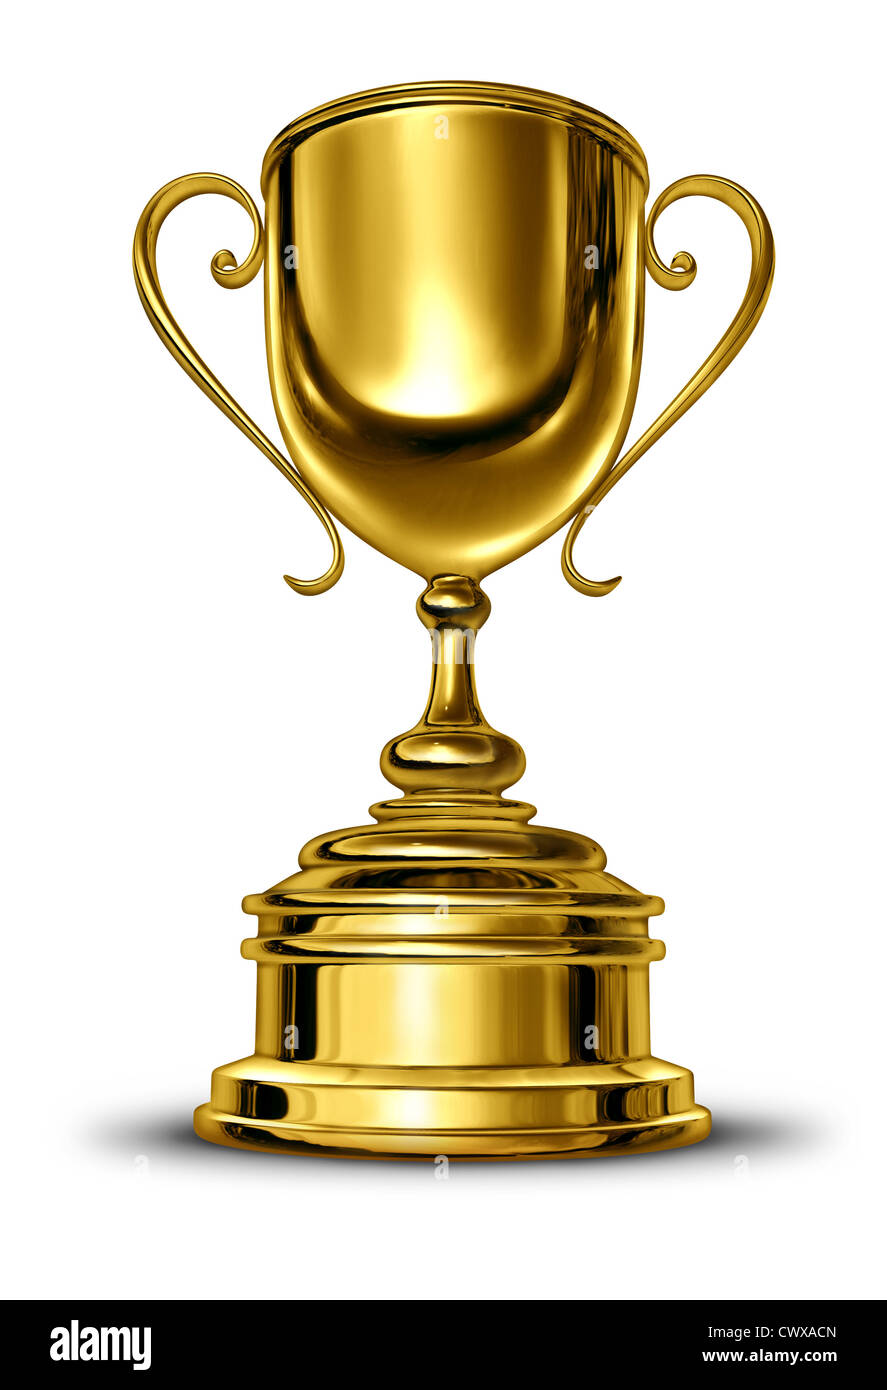 Gold Cup Sieger Trophäe mit einem leeren Metallsockel auf einem weißen Hintergrund als Erfolgskonzept für gewinnen und als erstes und das beste in einem sportlichen Wettkampf oder eine Führungskraft, die siegreichen Champion ist. Stockfoto